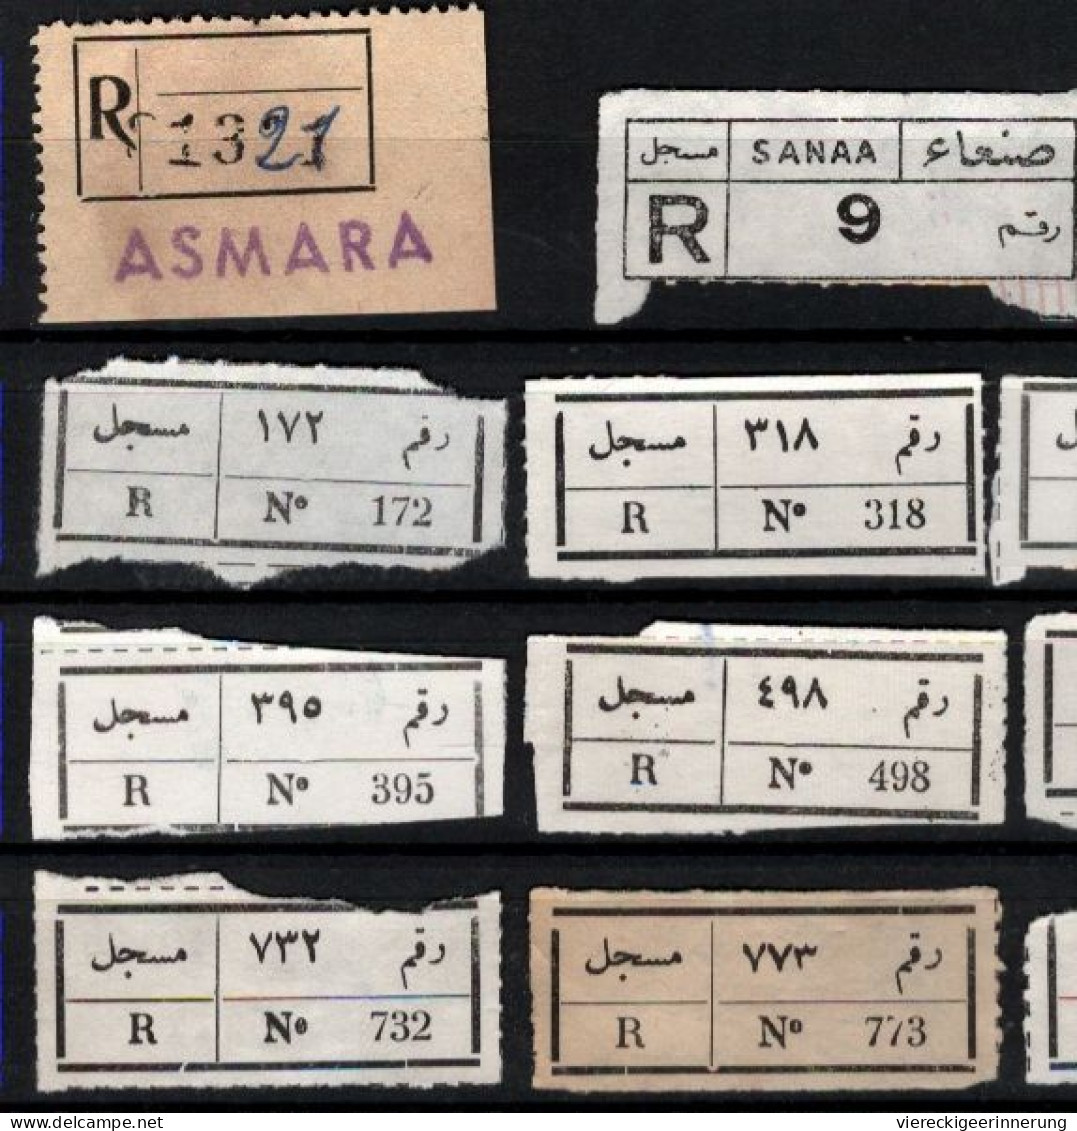 ! 1 Steckkarte Mit 14 R-Zetteln Aus Jemen, Yemen ?, Asmara, Sanaa, Einschreibzettel, Reco Label - Yémen